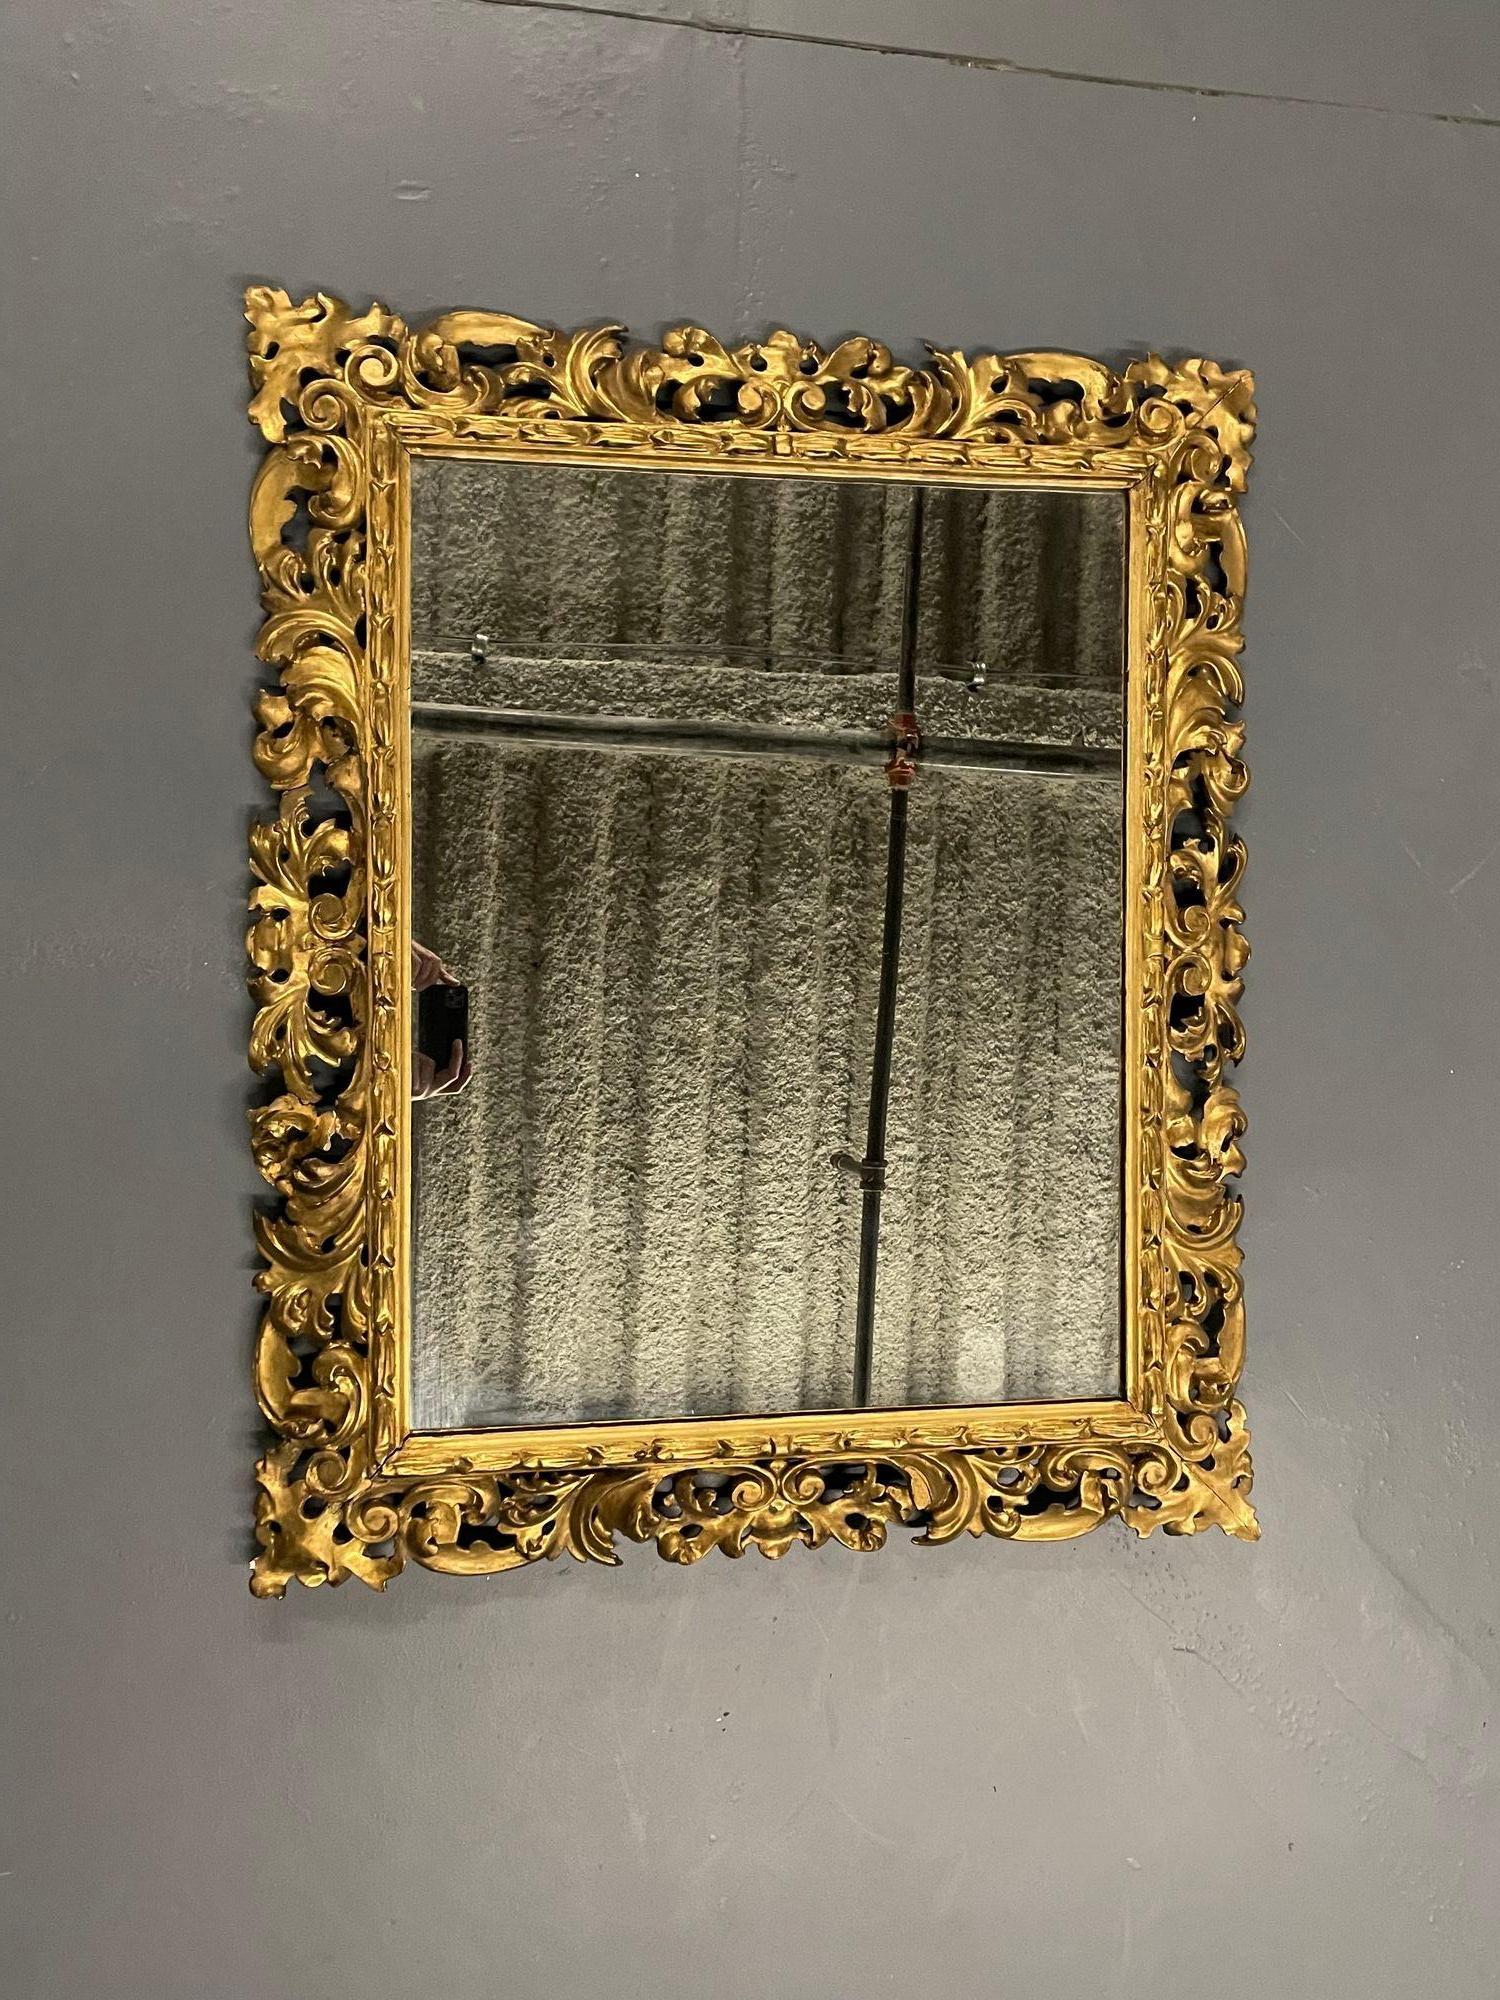 Französisch aufwendig geschnitzt Quadrat Wand / Konsole / Pier Spiegel, Giltwood, 
Ein durchbrochener, fein geschnitzter Wand- oder Konsolenspiegel aus vergoldetem Wasserdesign mit einem sauberen Mittelspiegel. Dieser wunderschön geschnitzte Spiegel